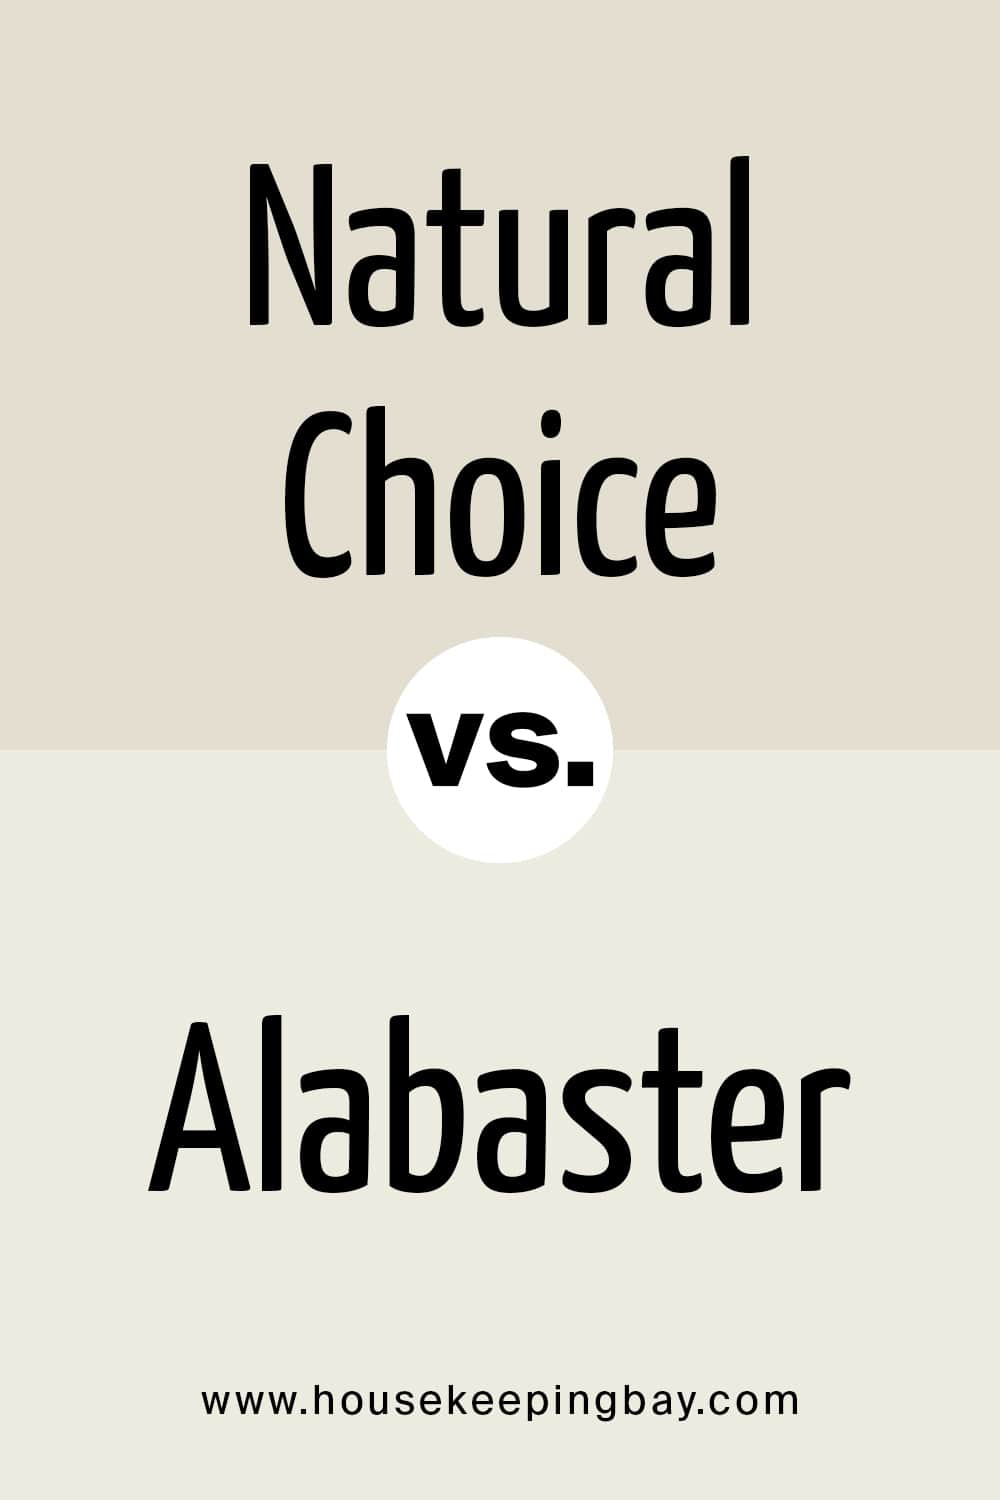 Natural Choice VS Alabaster